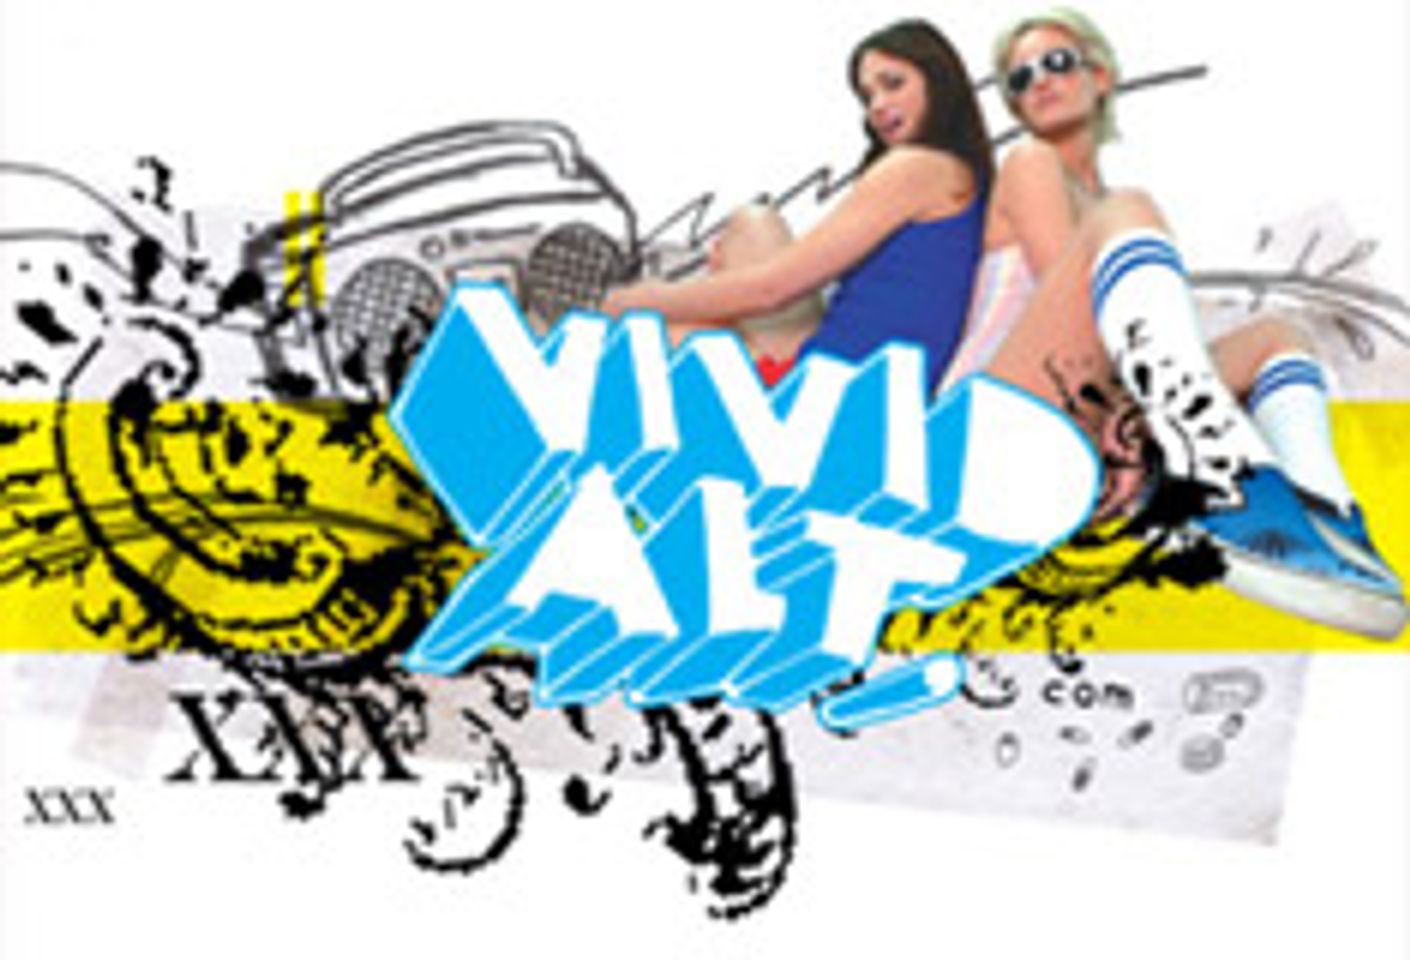 Vivid-Alt Launches Website, Contest